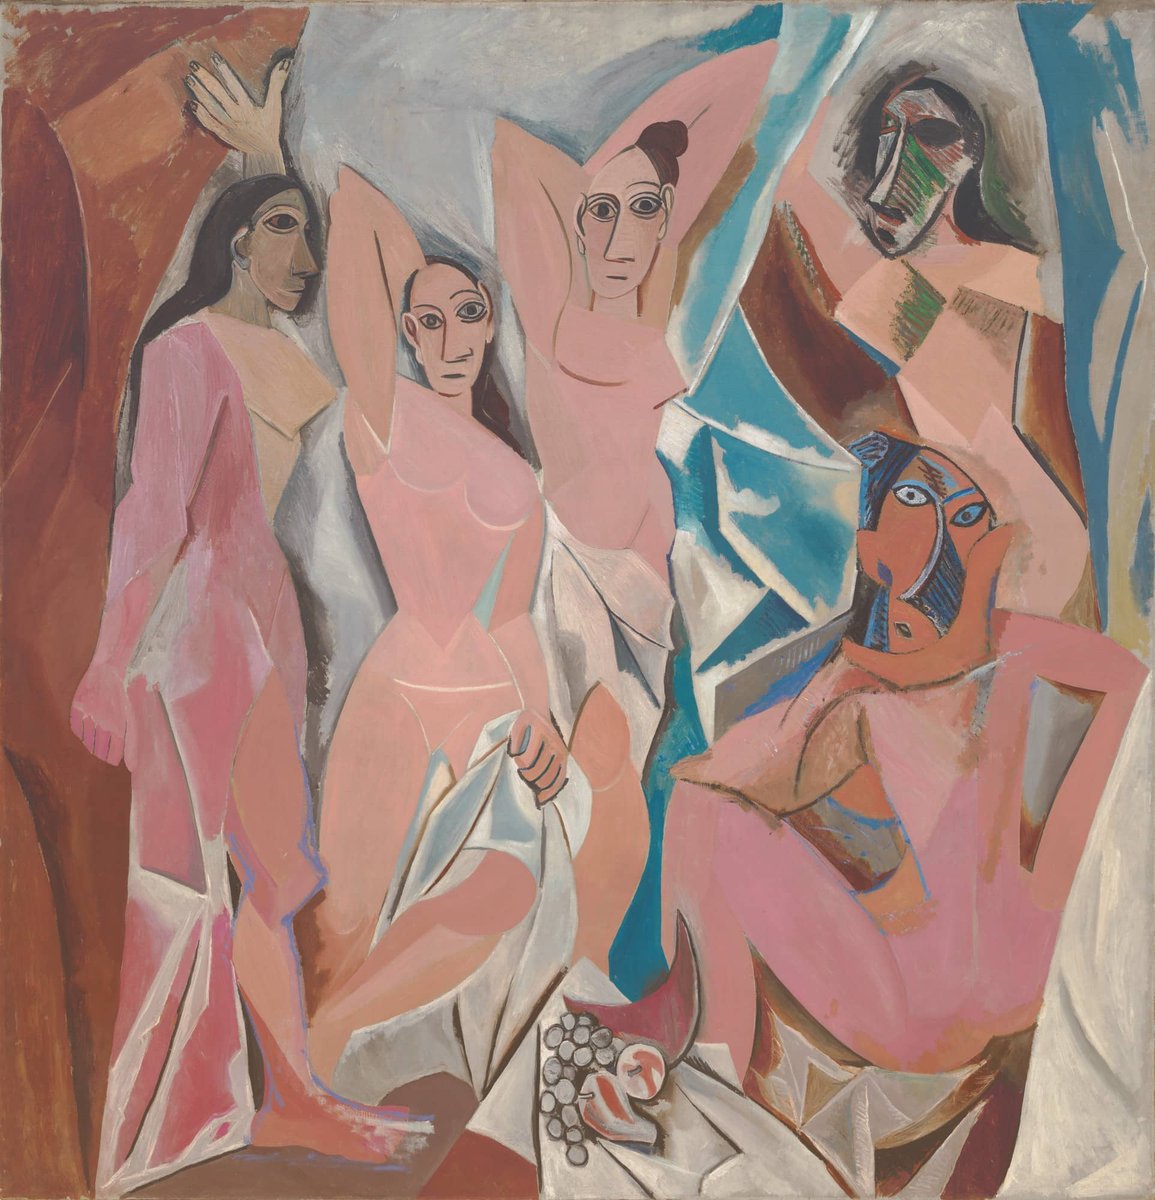 Pablo Picasso, Les Demoiselles dAvignon, Paris, 1907-1